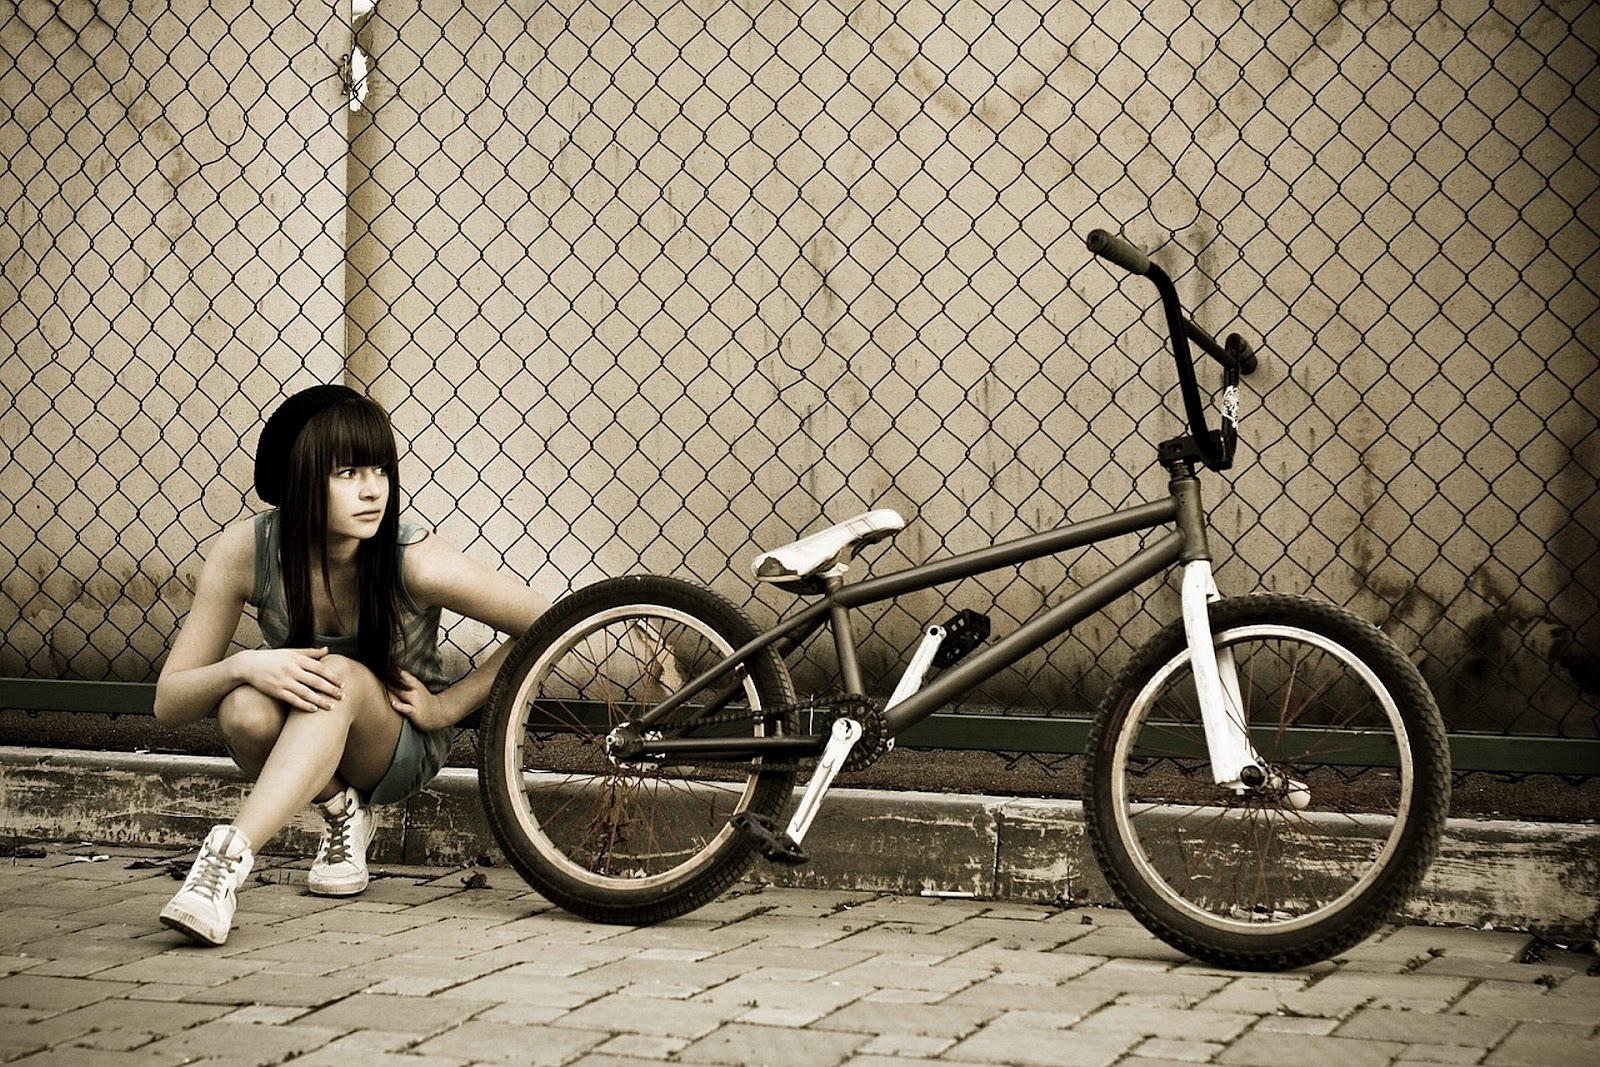 bmx wallpaper hd,bicycle,vehicle,bicycle saddle,bicycle wheel,bicycle frame